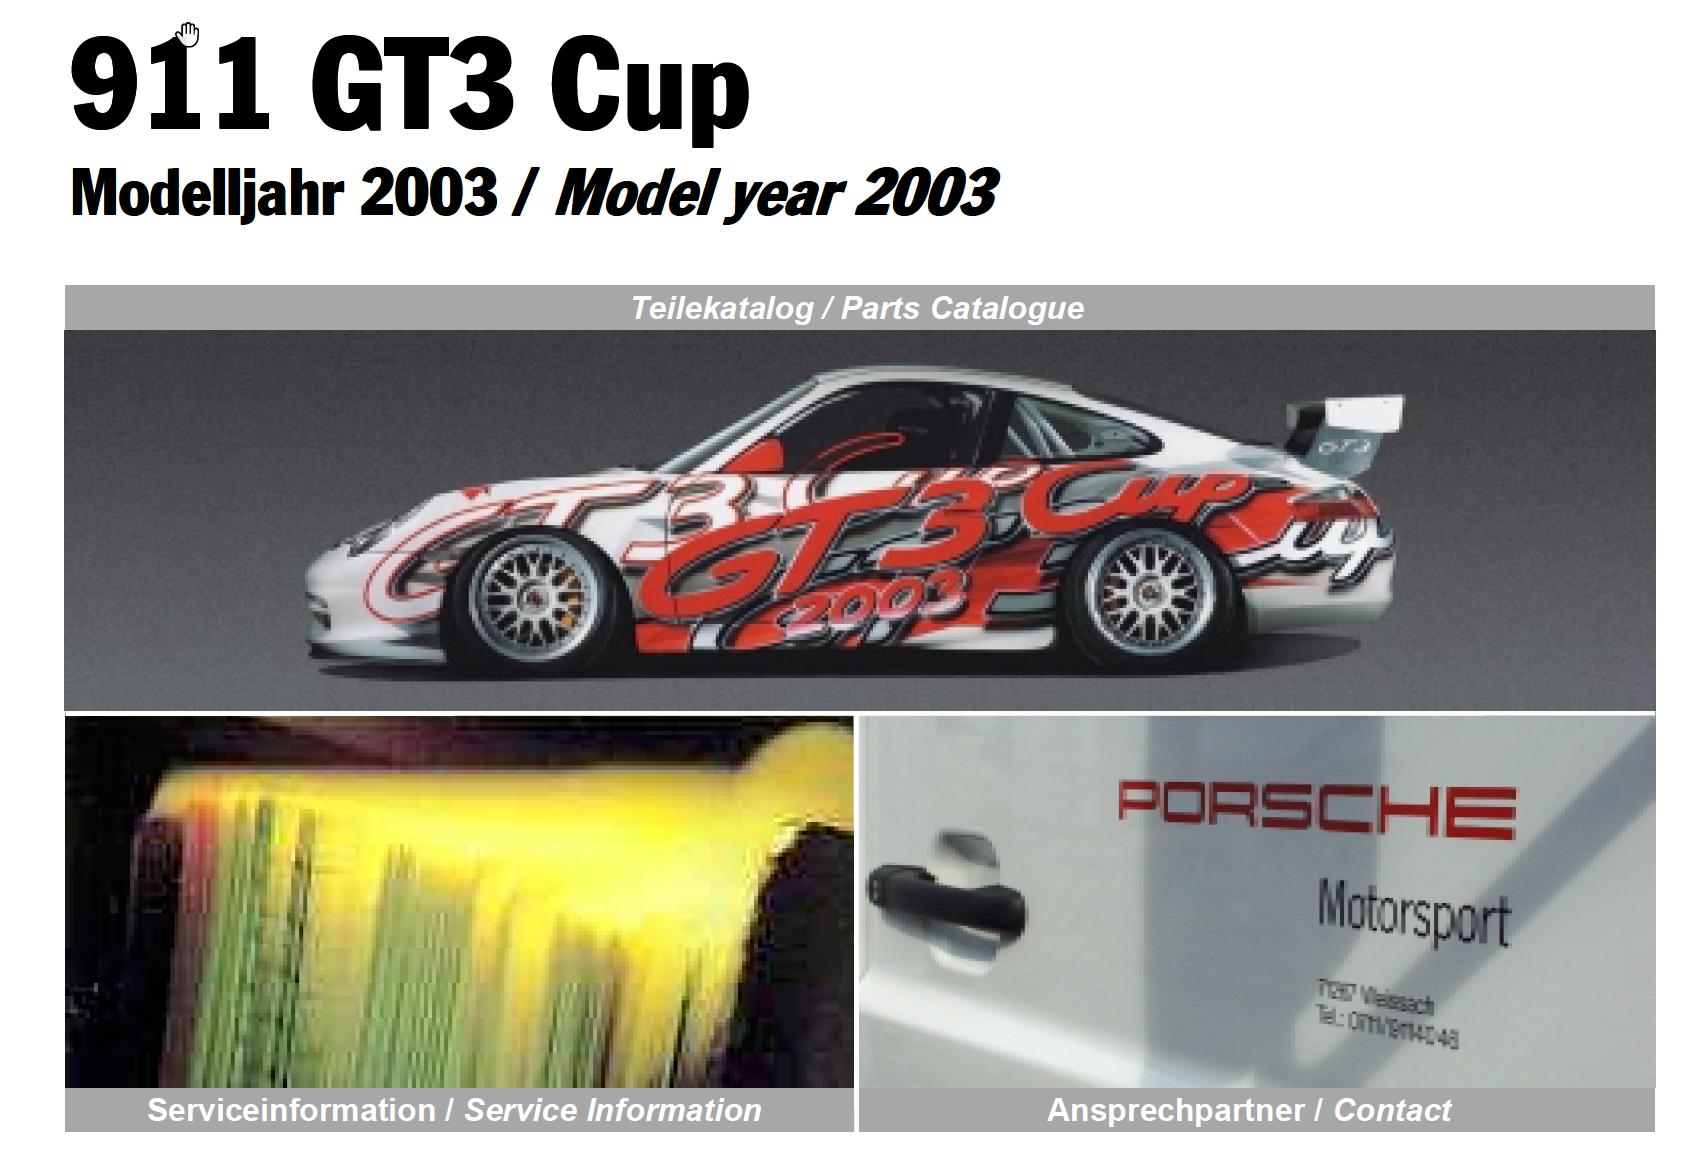 2008 GT3 Cup Technical Manual - Schematics - 997 GT3, GT3 RS - RennTech.org Community